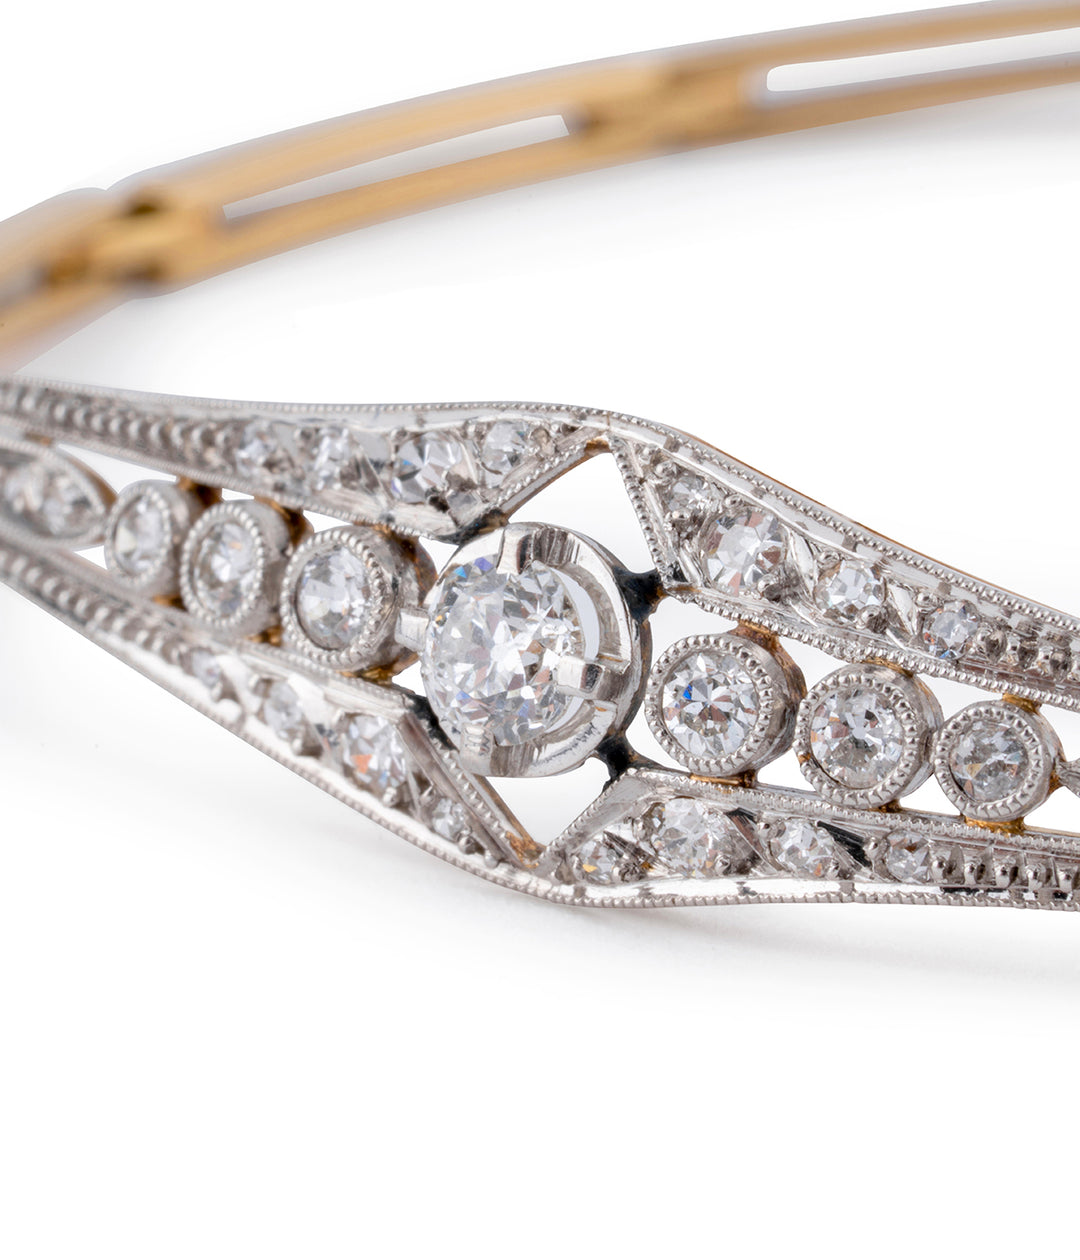 Bracelet ancien diamants "Ive" details - Caillou Paris